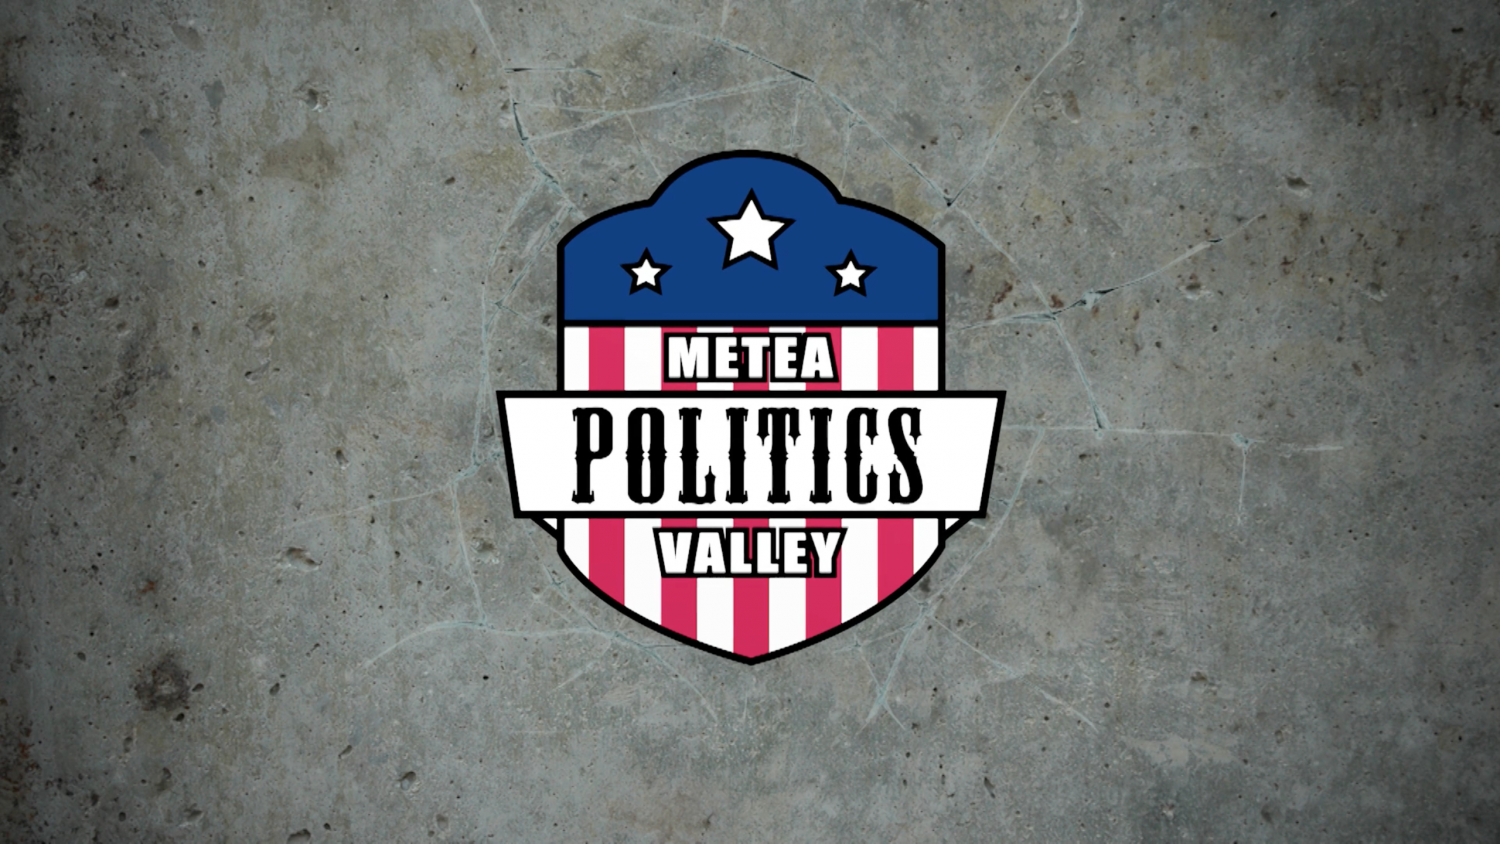 Web+Edit%3A+Metea+Valley+Politics